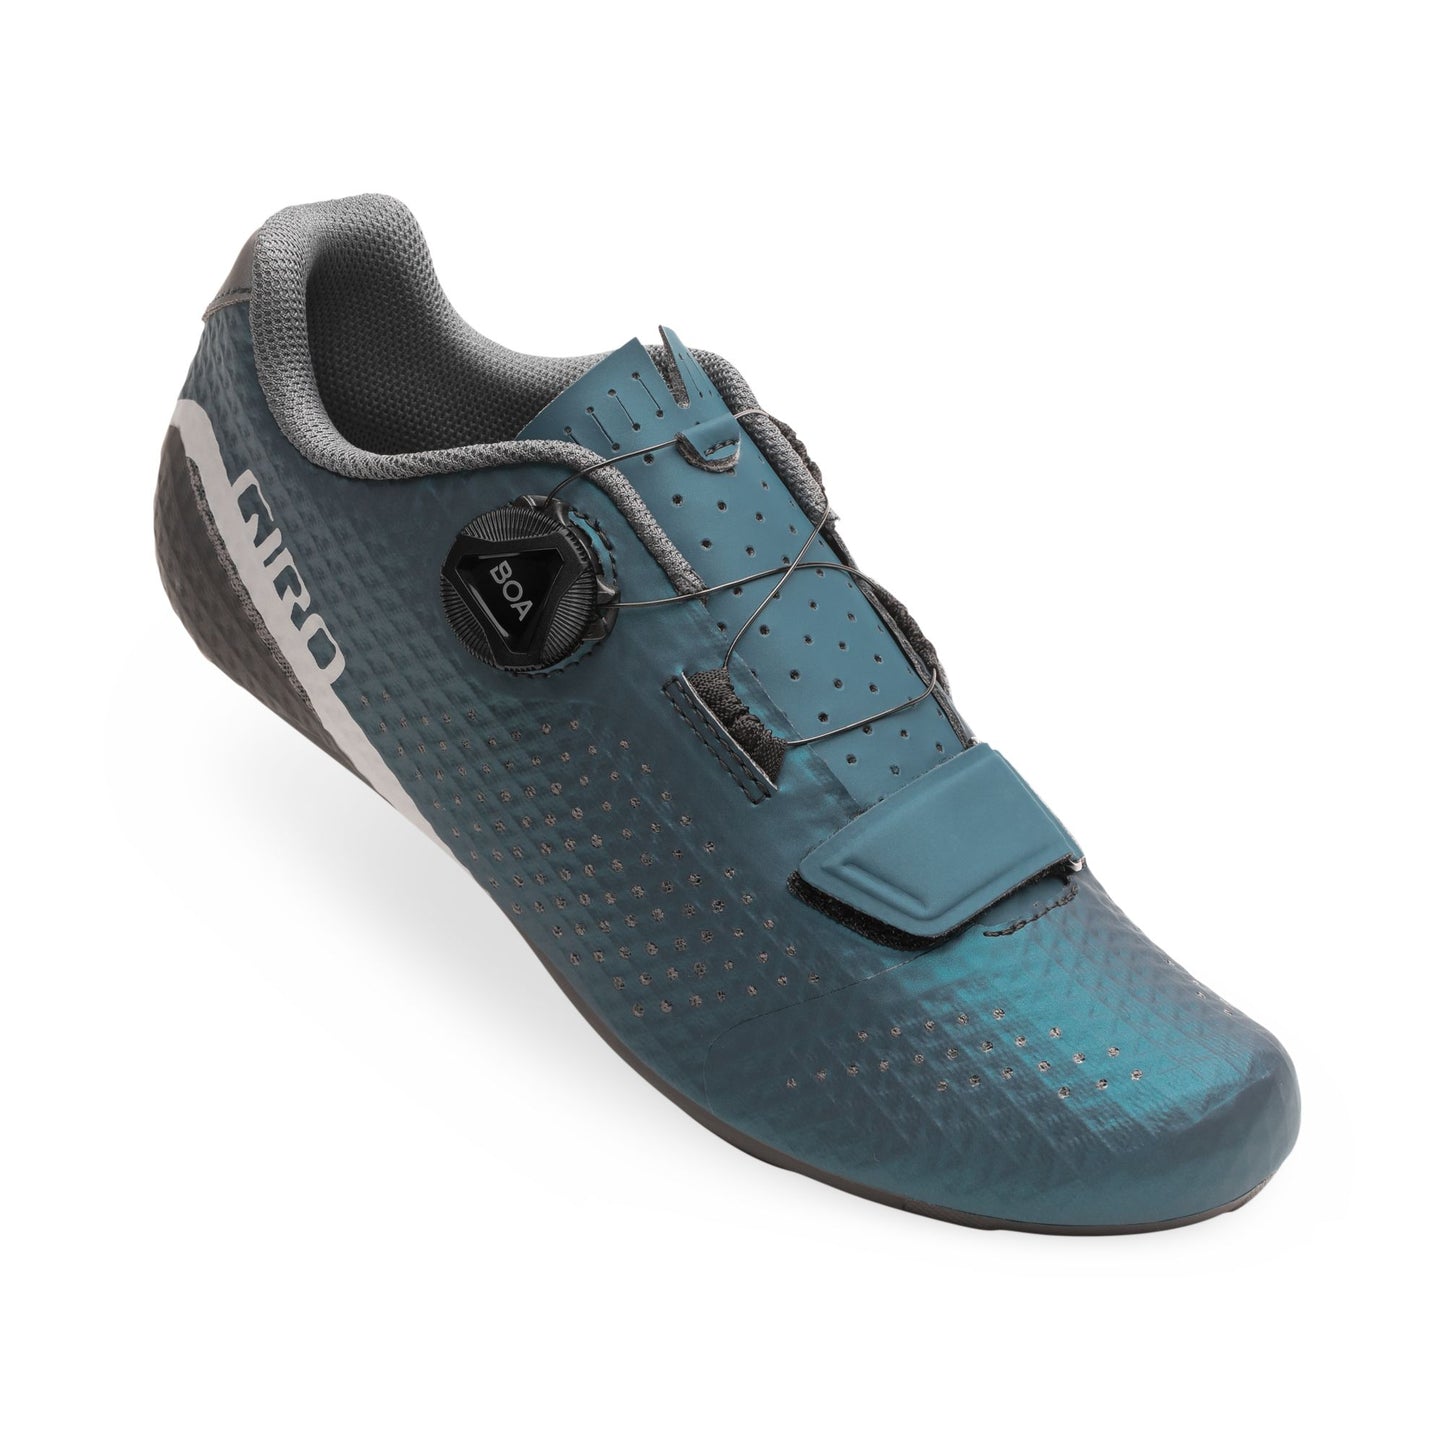 Giro Women's Cadet Shoe Harbor Blue Anodized Bike Shoes